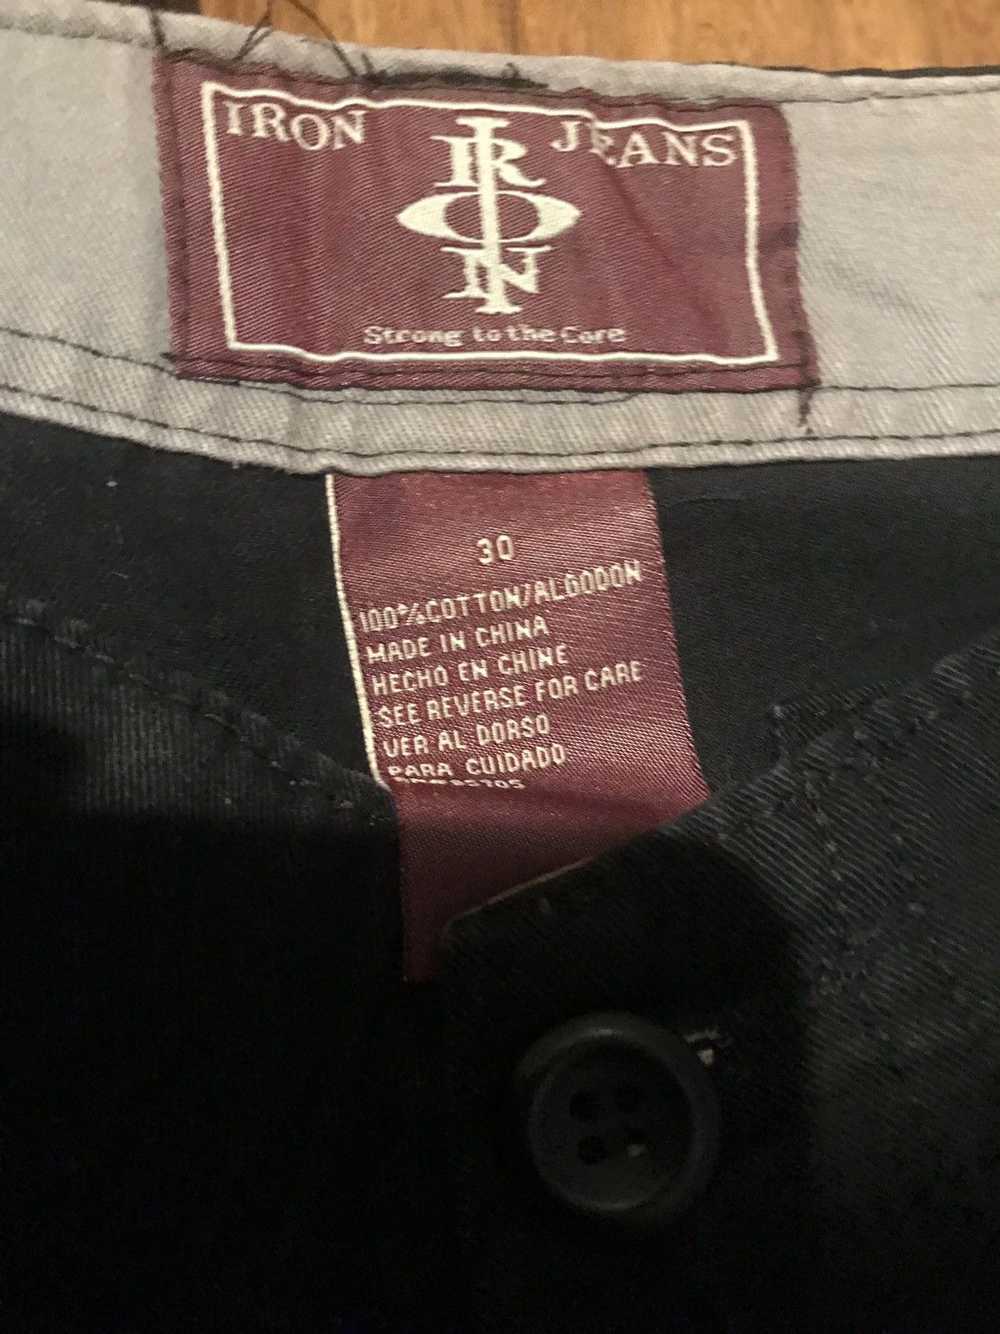 Iron Co. Iron Jeans Men’s Cargo Shorts - Size 30 - image 4